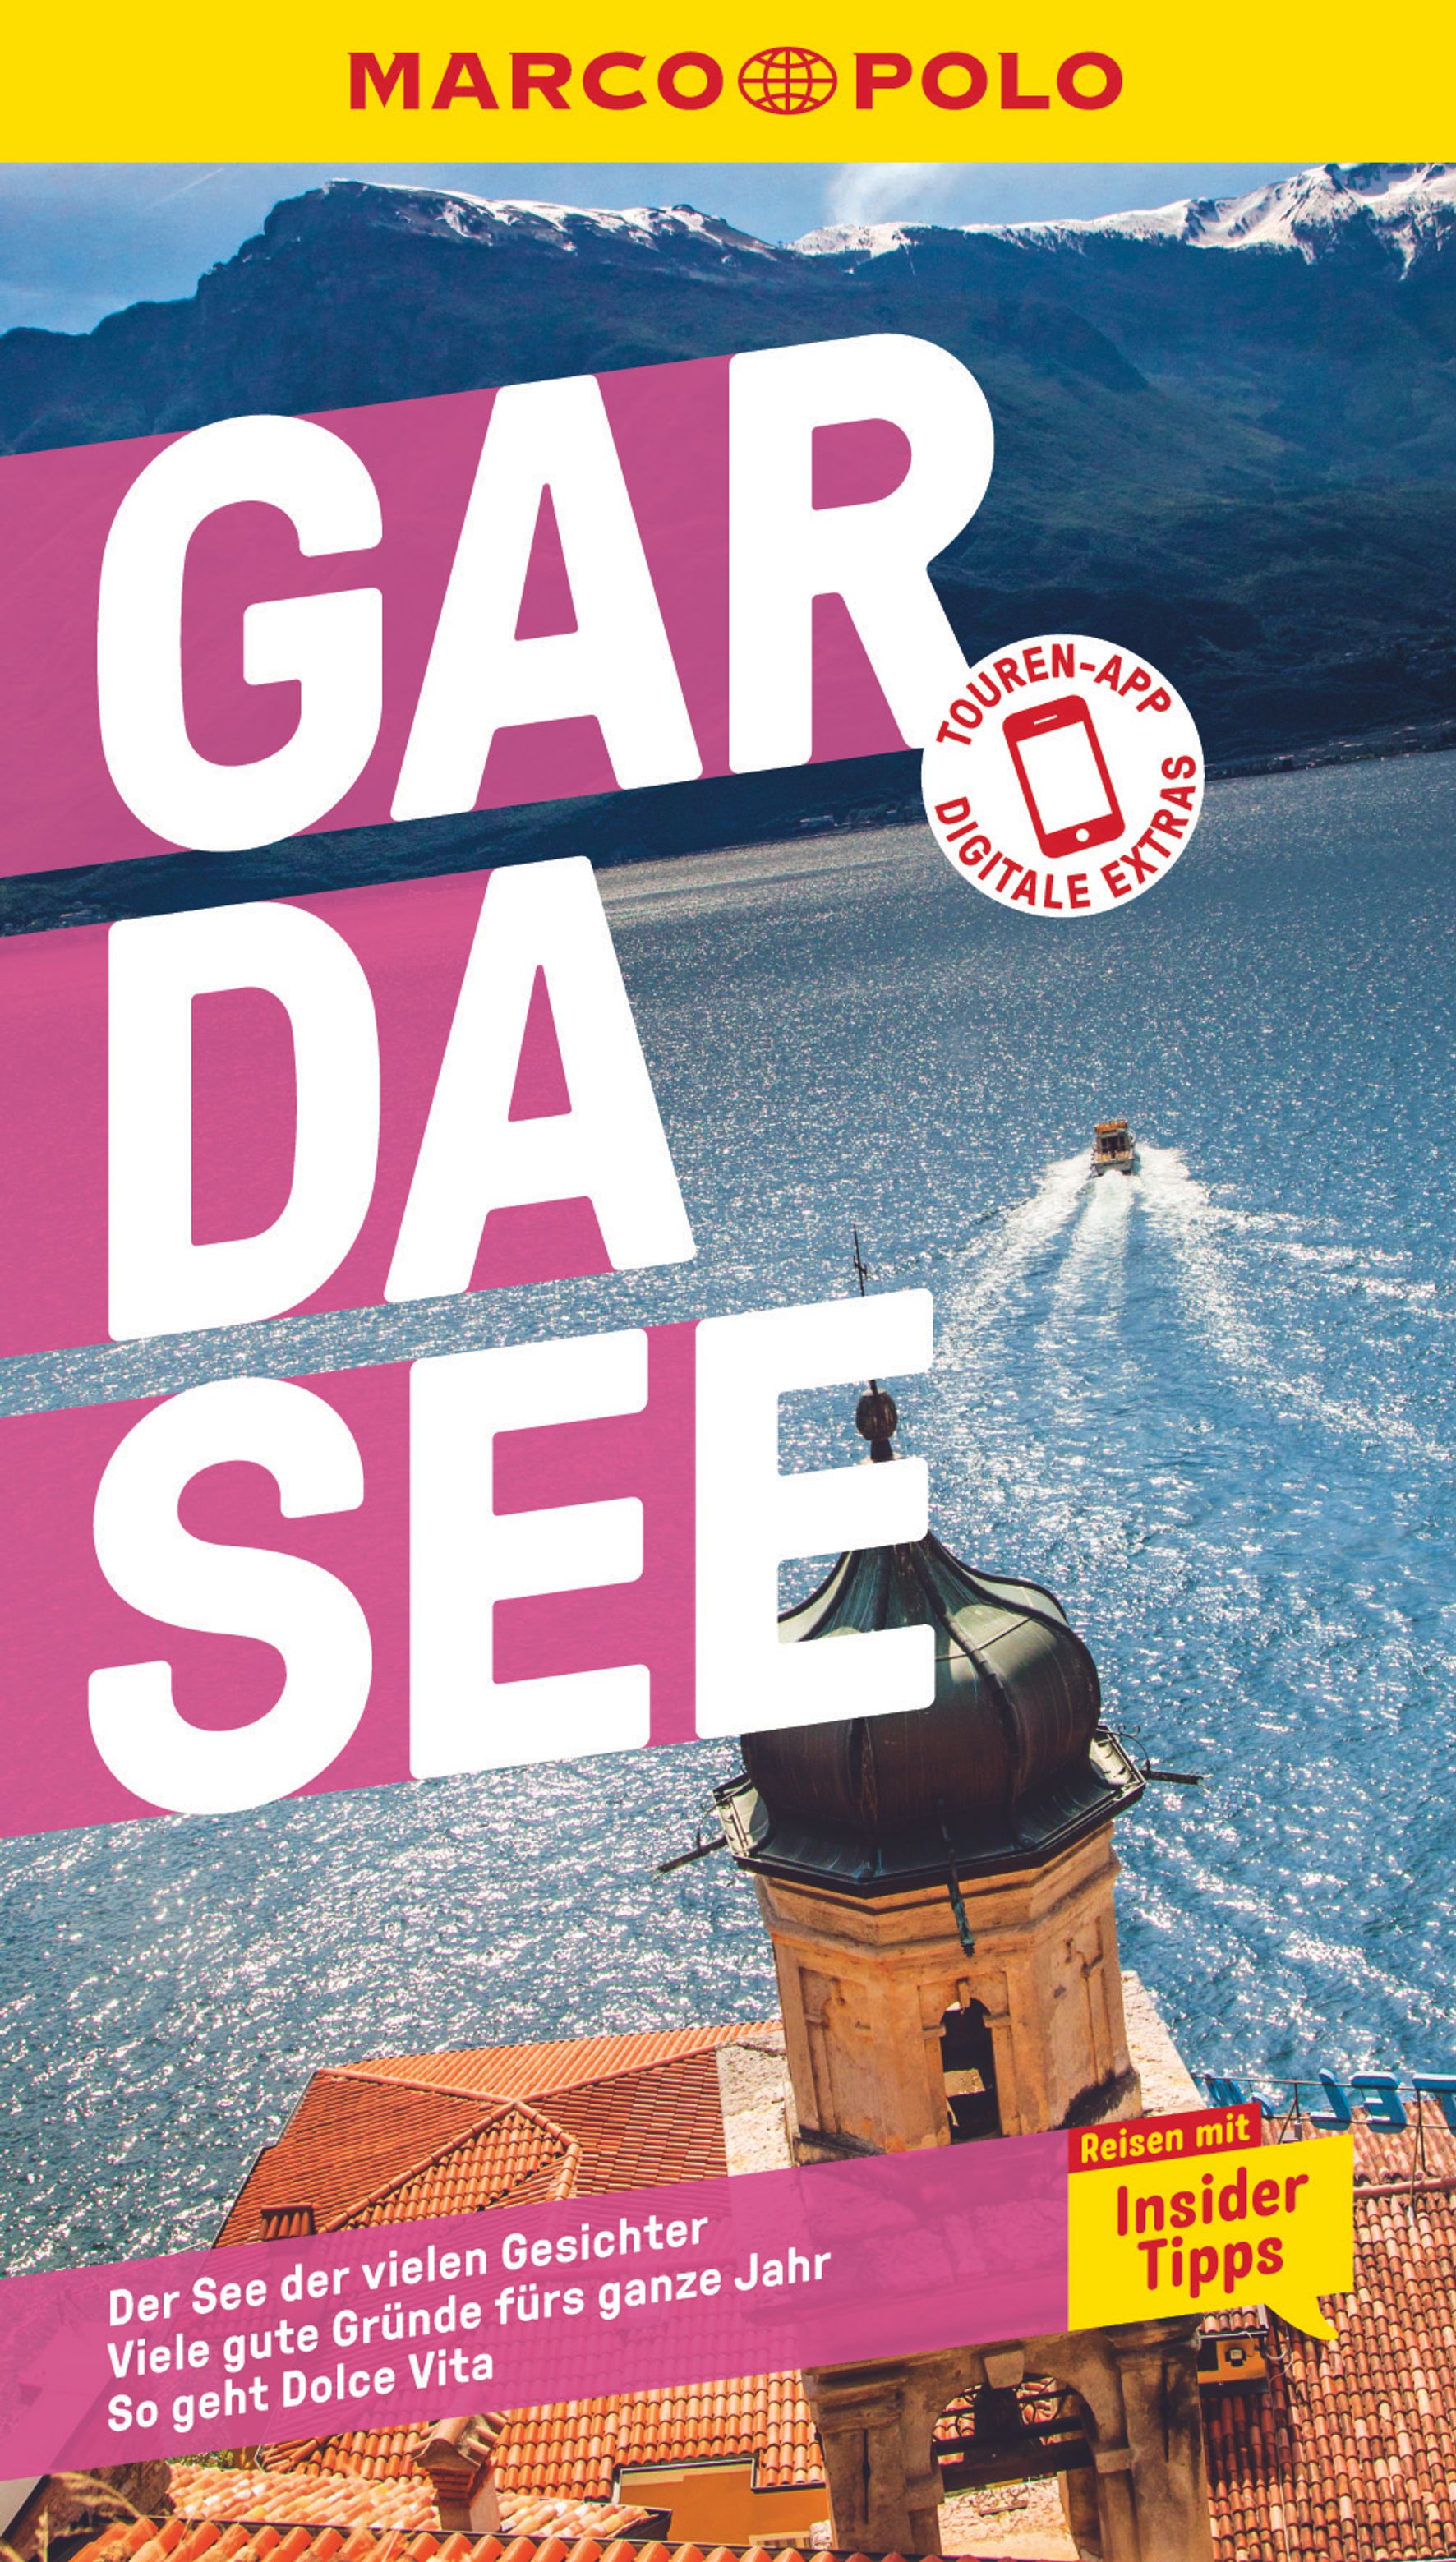 MAIRDUMONT Gardasee (eBook)